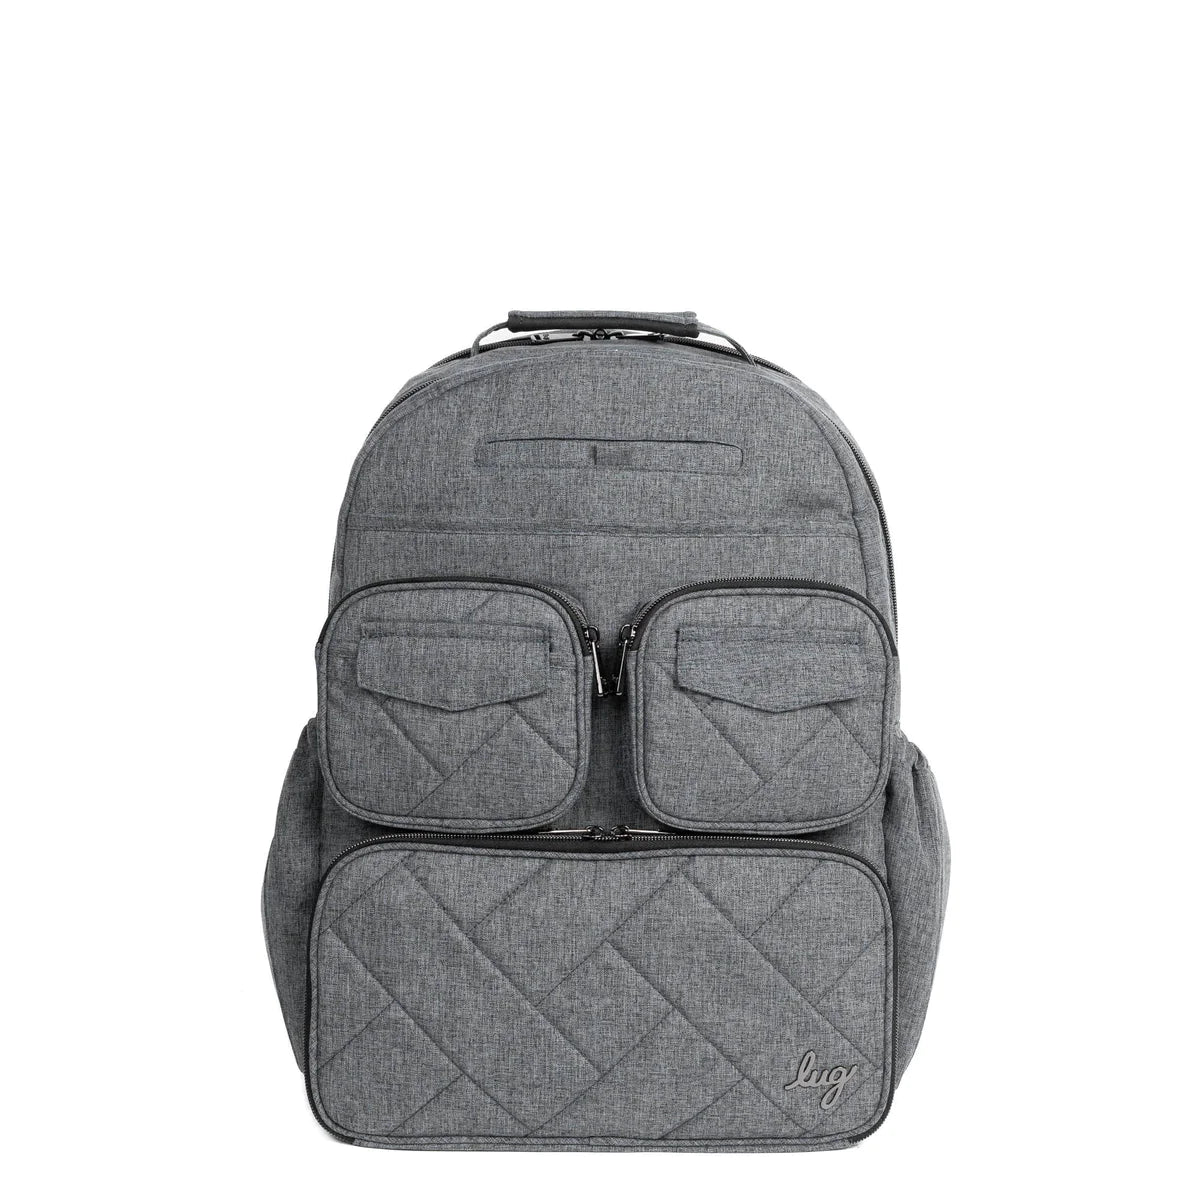 LUG Puddle Jumper SE Backpack in Heather Grey